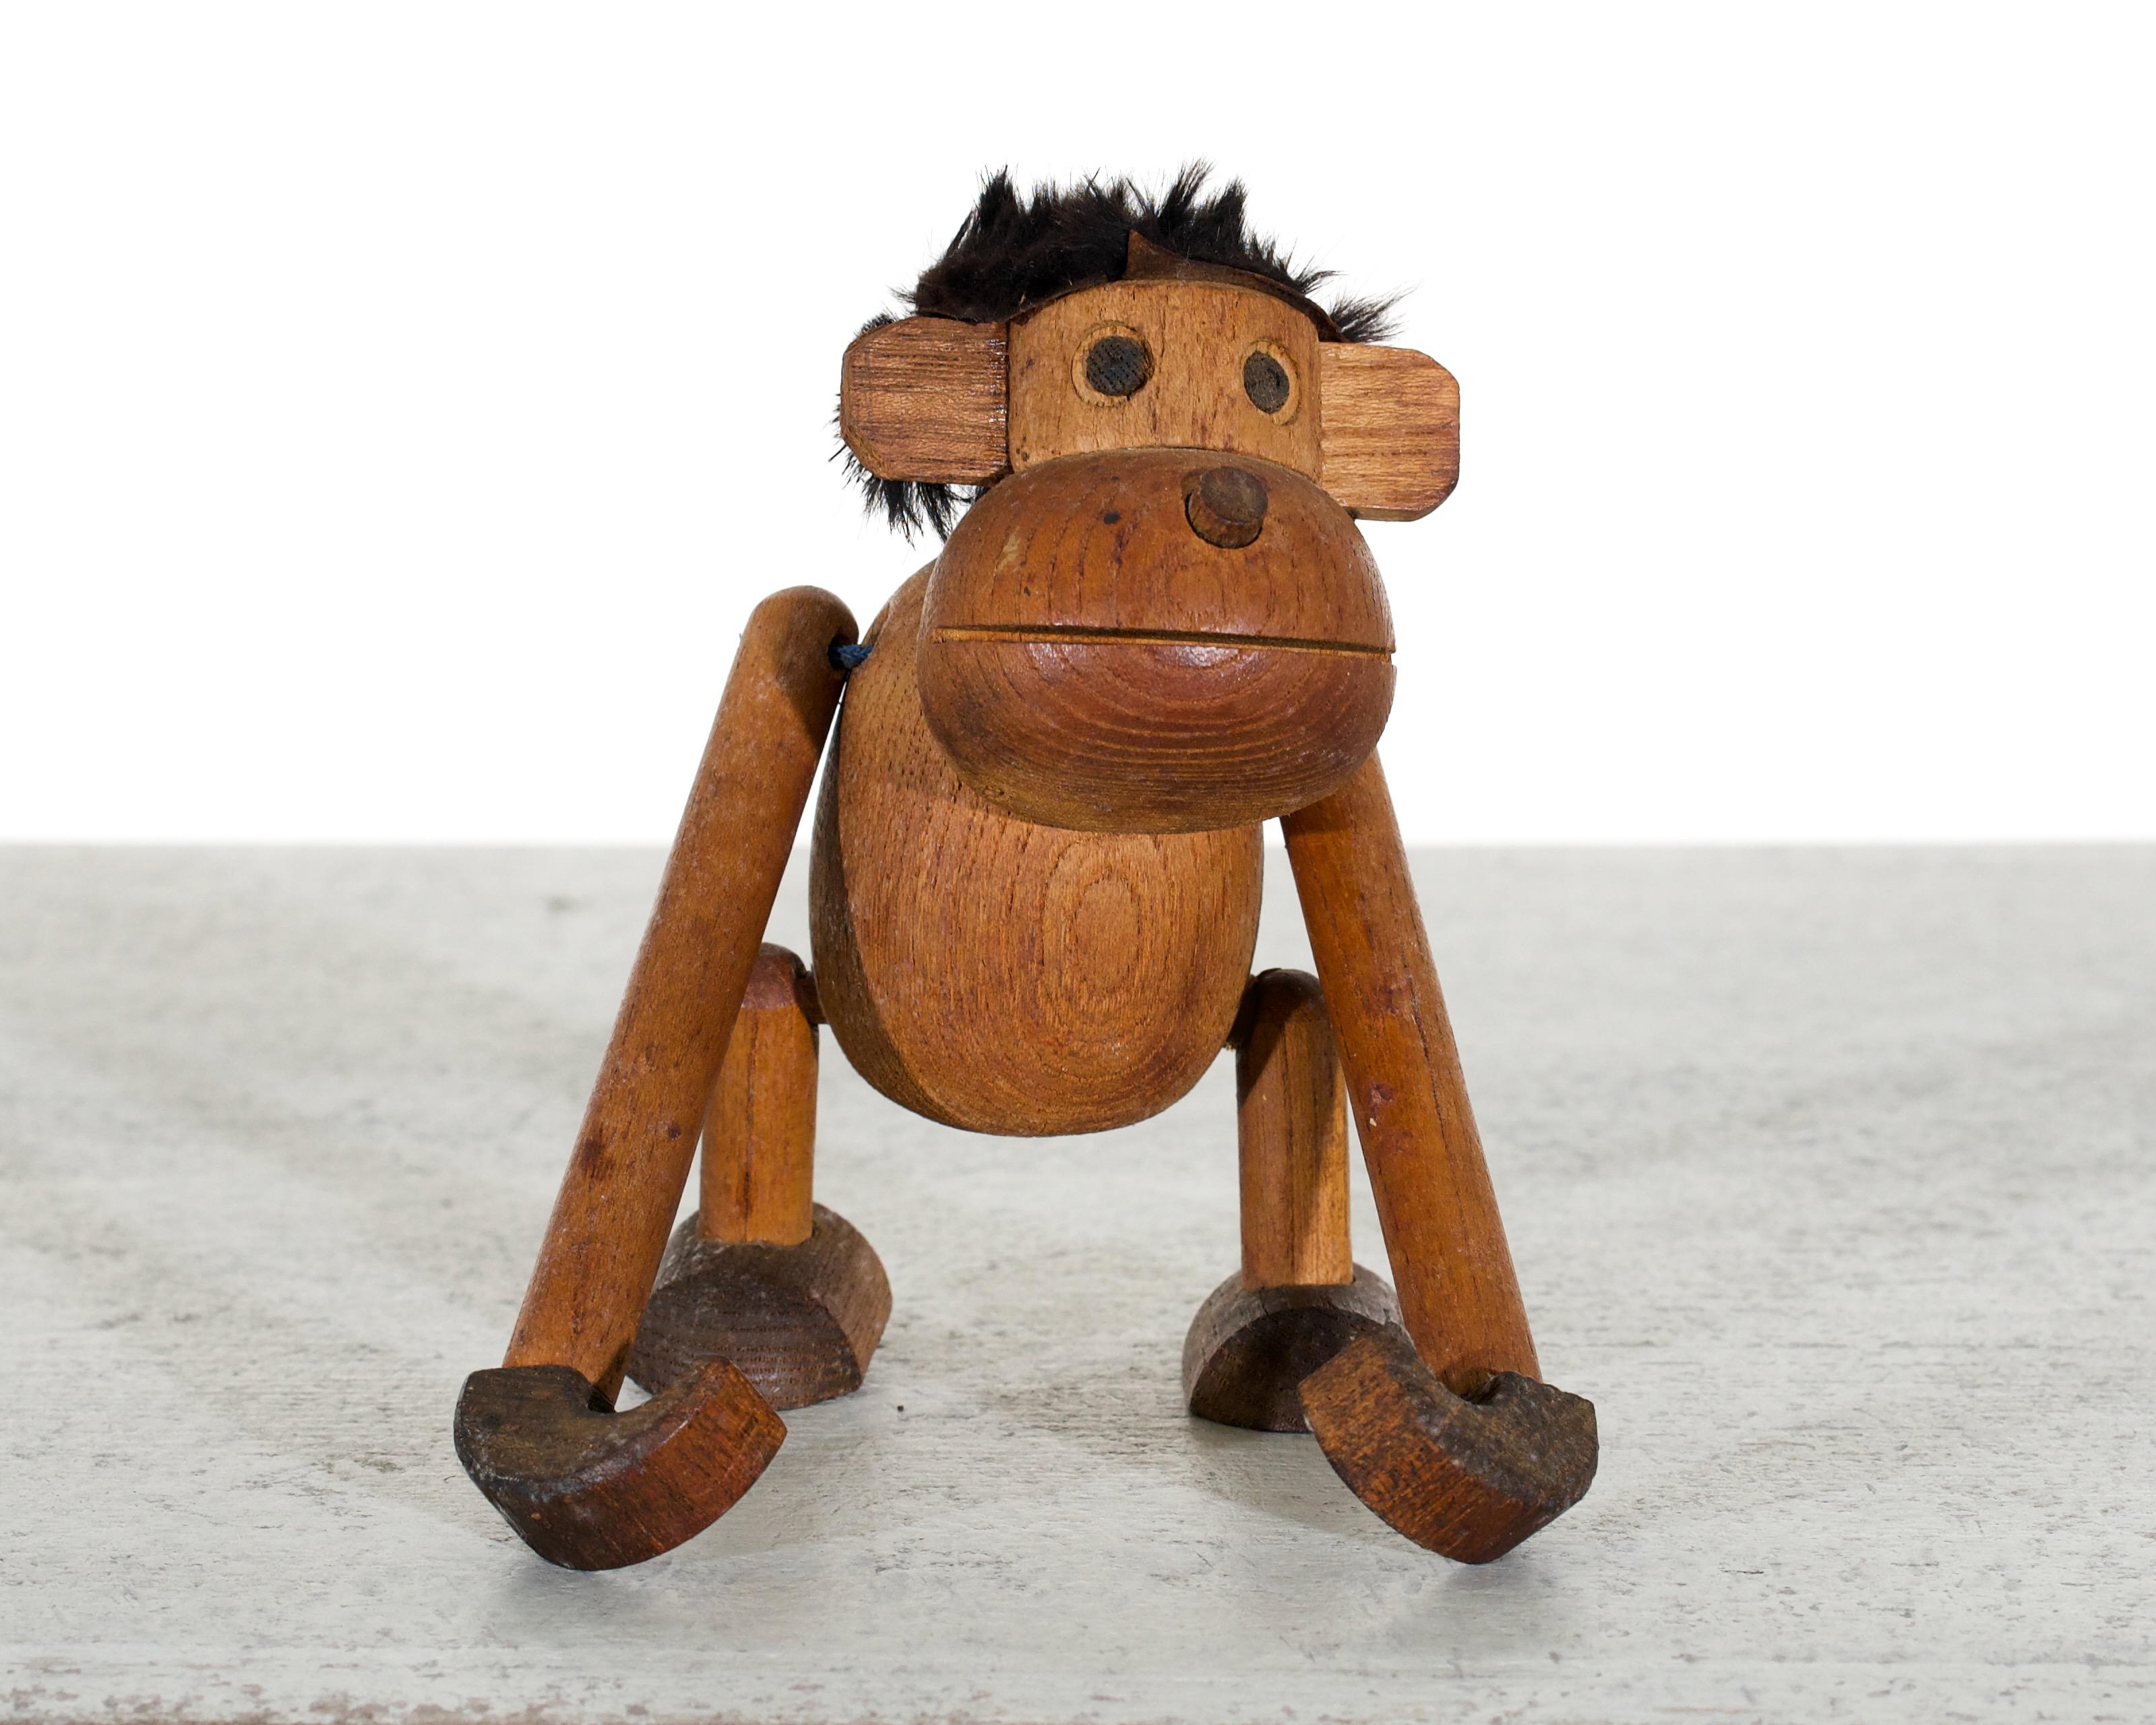 Il s'agit d'un très beau singe sculpté en bois. Il s'agit probablement d'une œuvre de jeunesse de la célèbre designer danoise Kay Bojesen. Il a probablement été créé dans les années 1950.